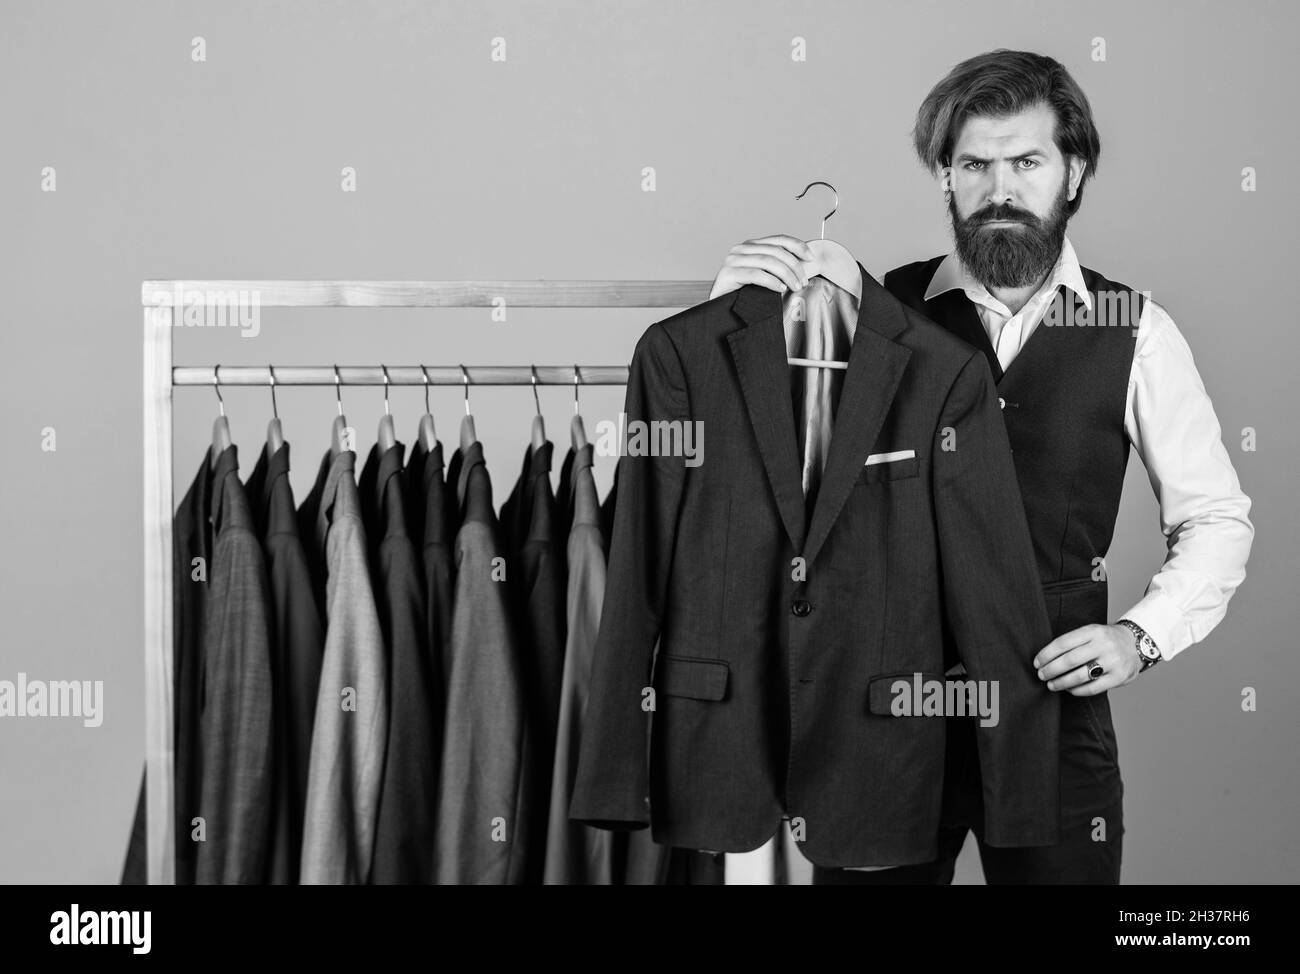 Homme acheter vêtements magasin de mode vêtements pour hommes costume  Tuxedo, concept de style formel Photo Stock - Alamy